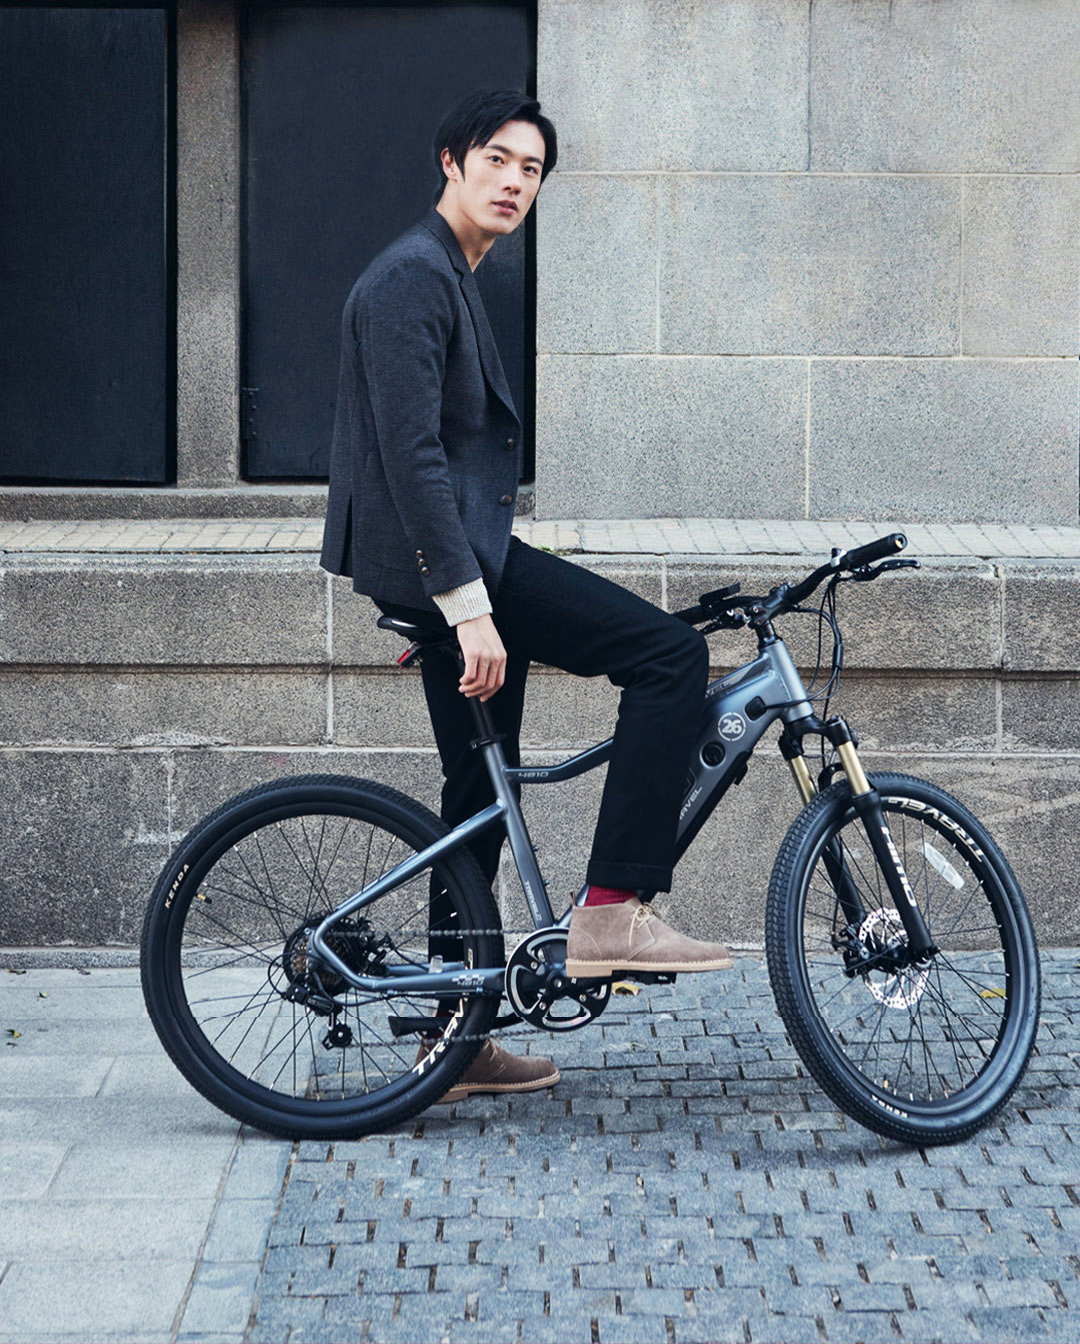 Xe đạp điện trợ lực Himo C26 được thiết kế bắt mắt, thẩm mỹ, năng động, phù hợp với mọi lứa tuổi